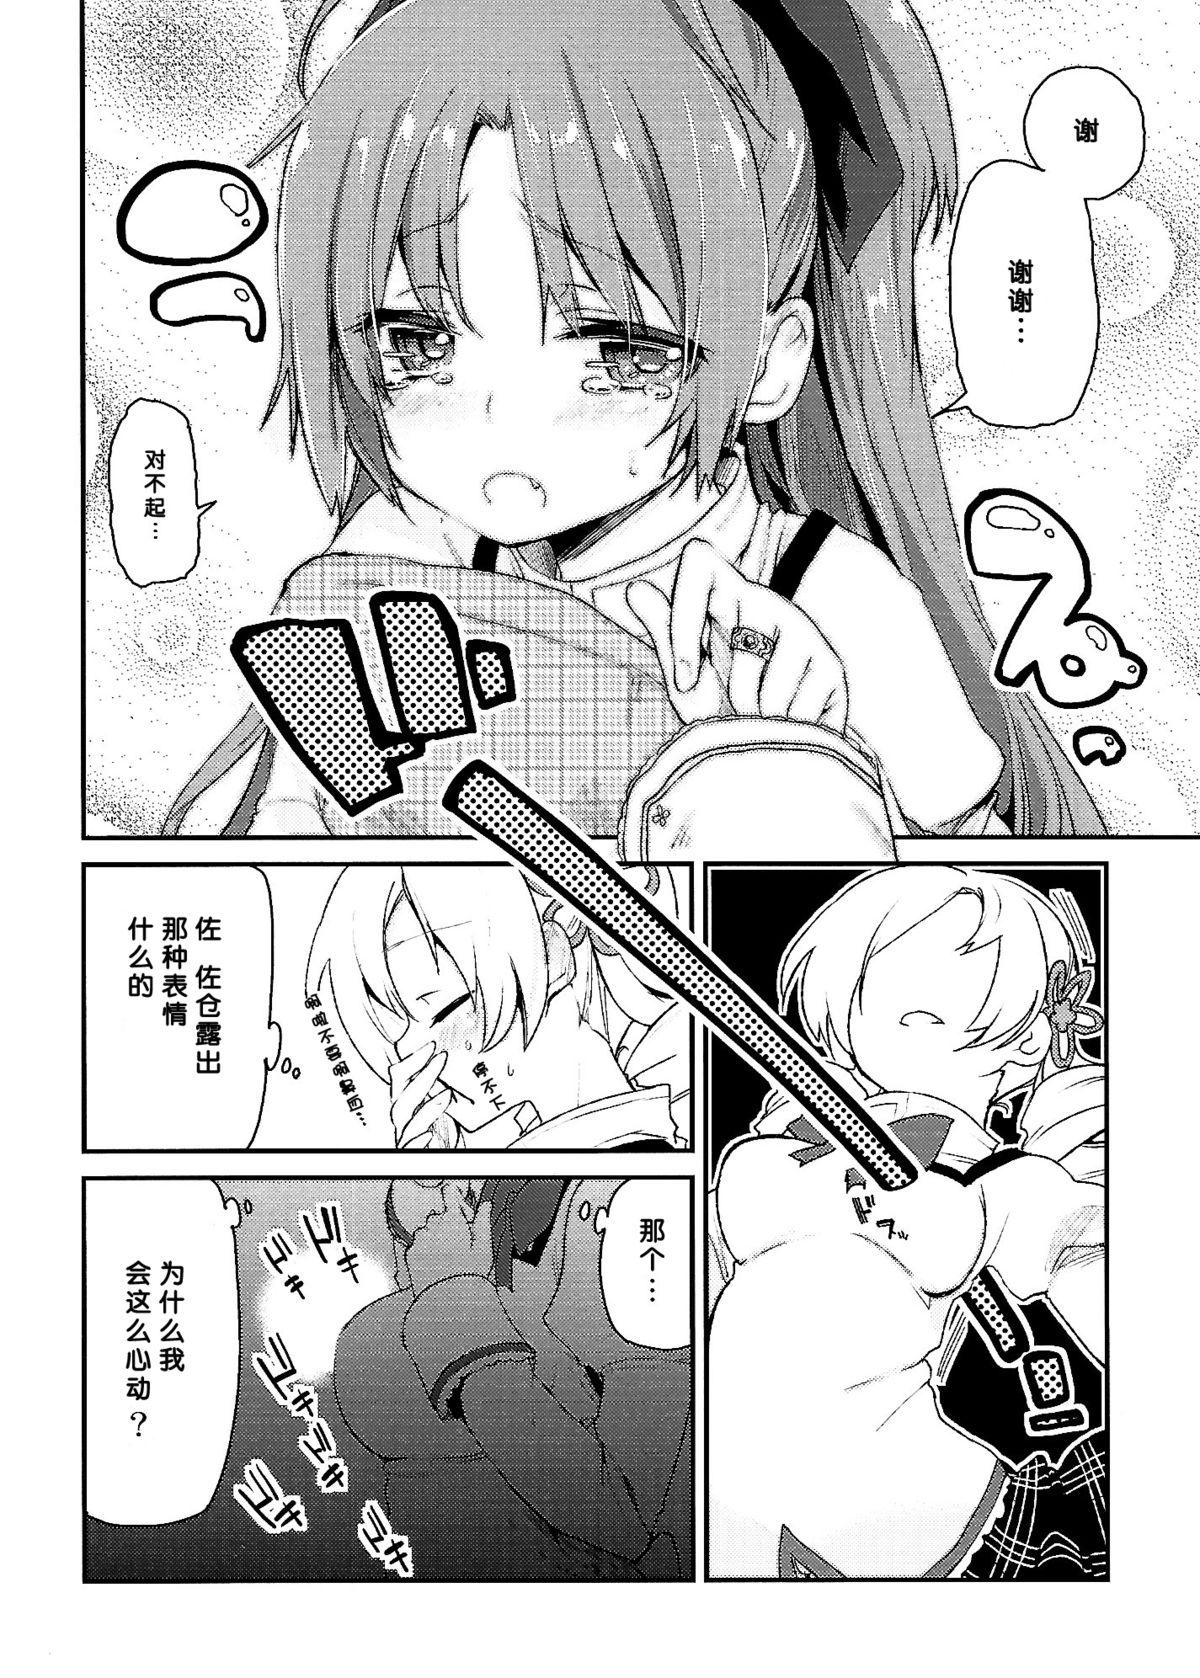 Africa Sakura-san ga Tottemo Kawaii kara - Puella magi madoka magica Gay Kissing - Page 8